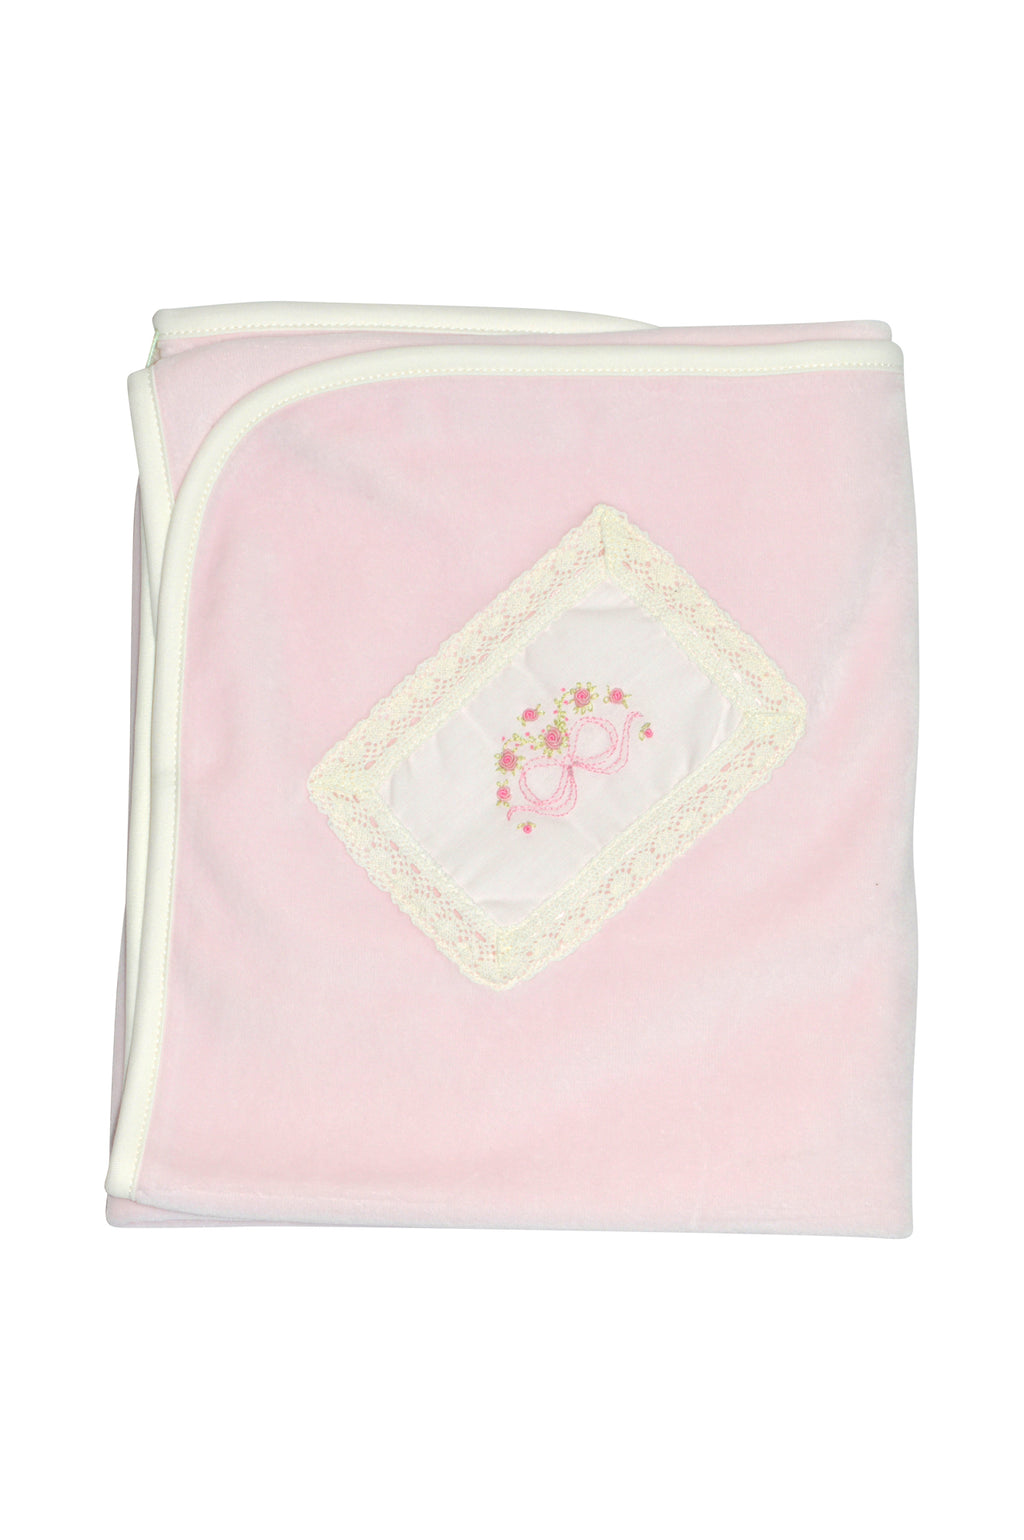 Bow Velour Baby Girl's Blanket - Little Threads Inc. Children's Clothing